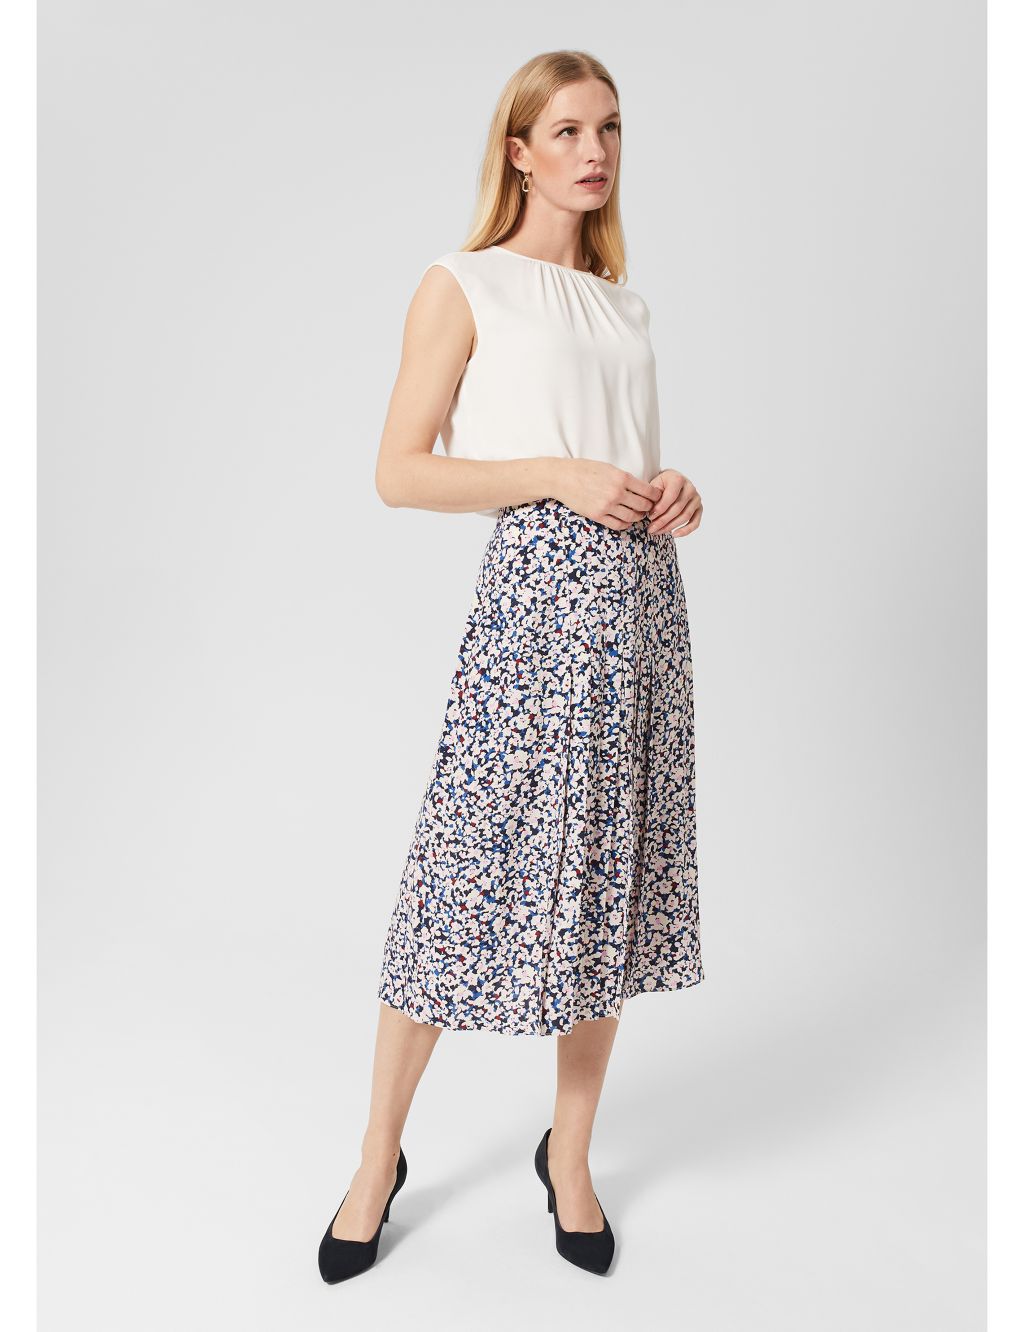 Floral Midi Slip Skirt image 1